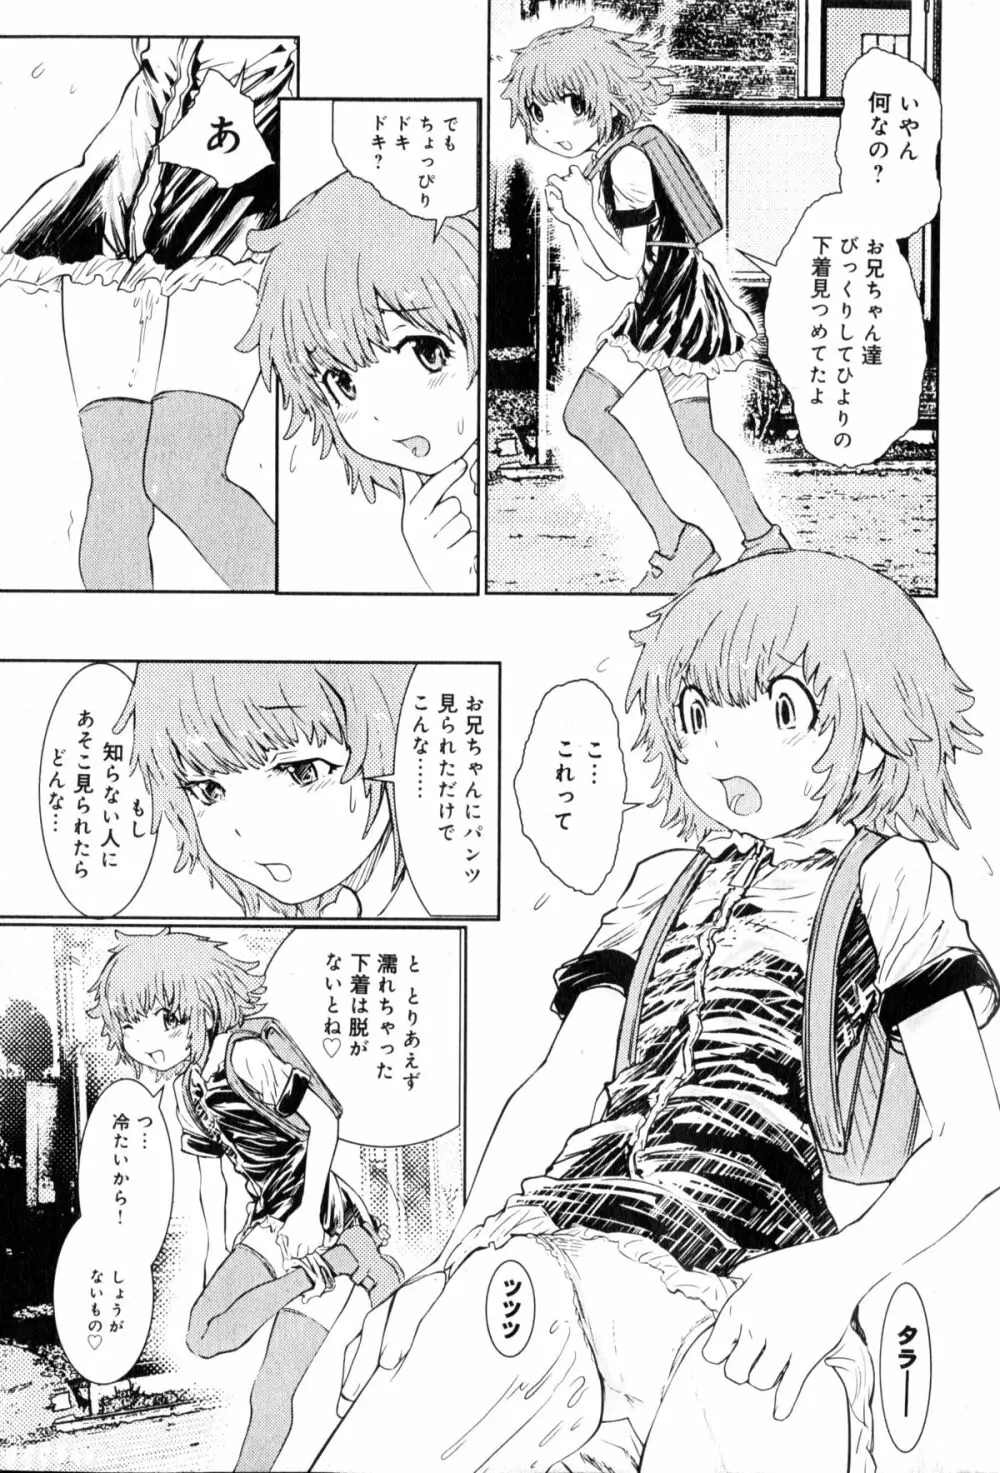 Hiyori Tadaima Roshutsu Naka [Hiyori's coming home a streaker] 1-2 (JAP) Page.6